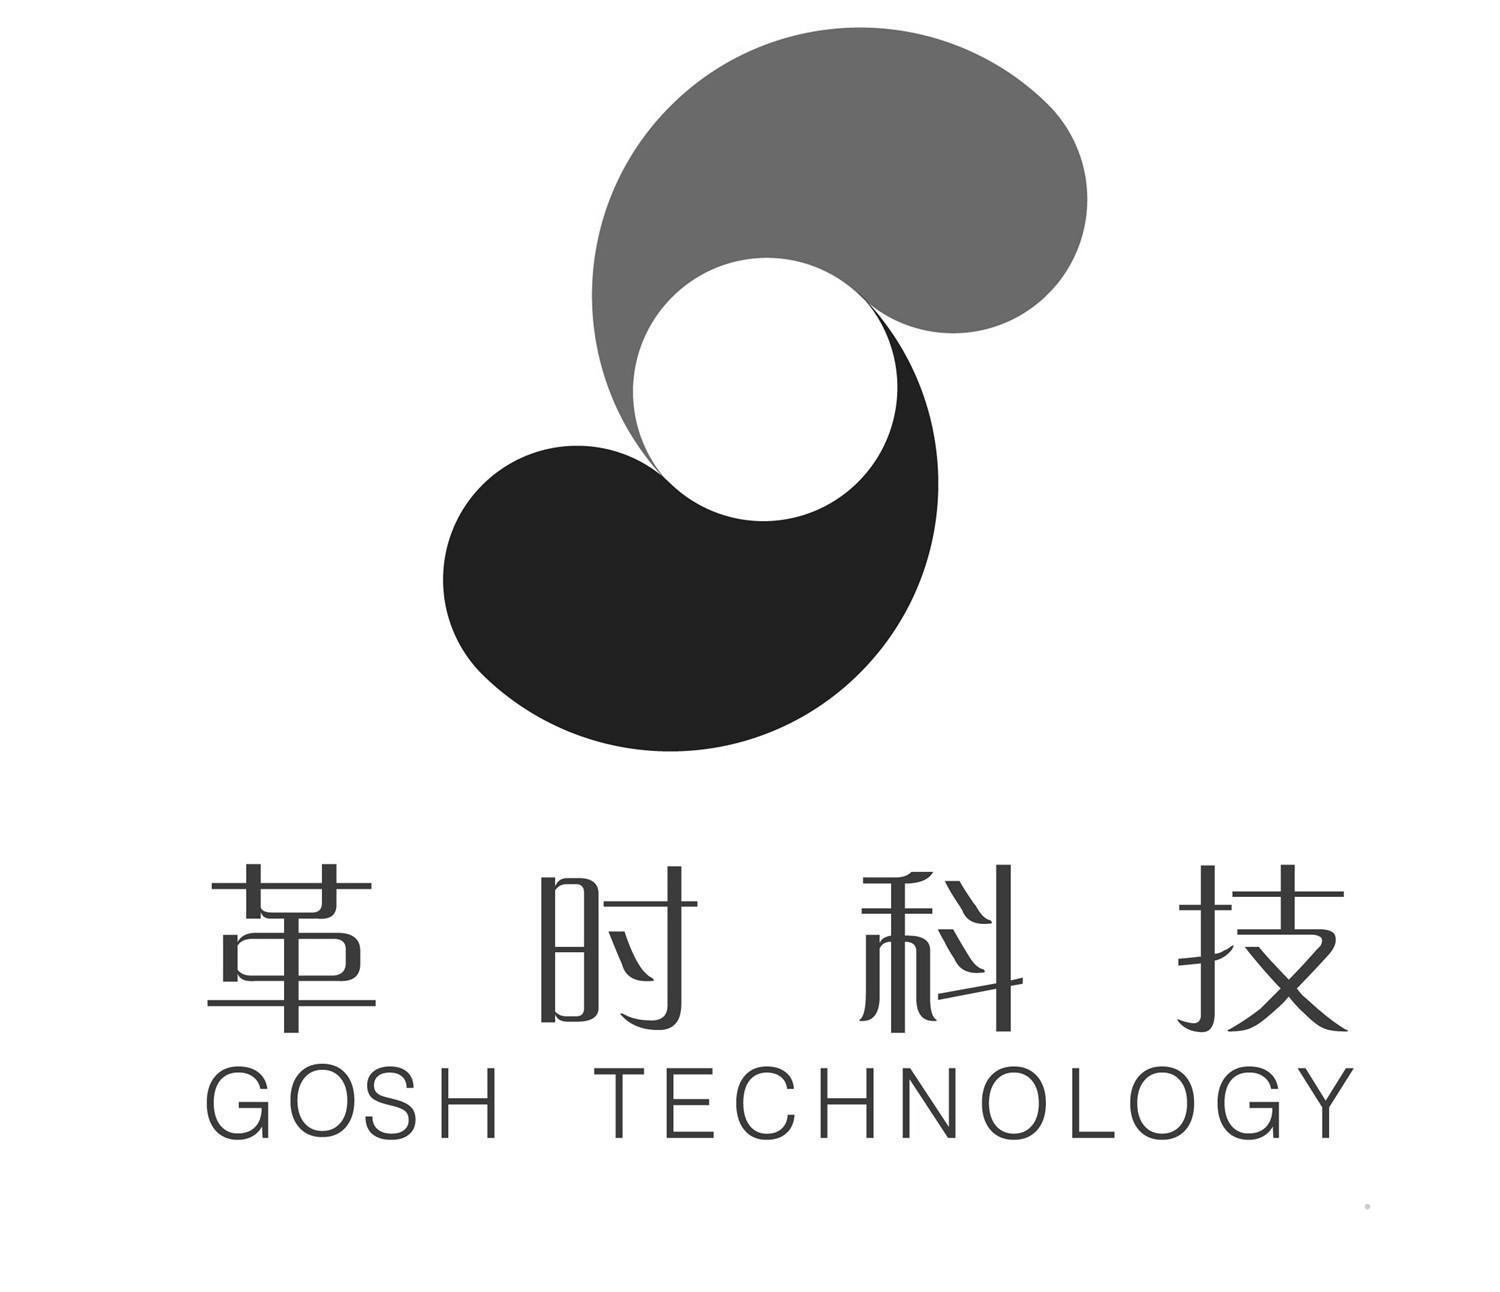 革时科技 GOSH TECHNOLOGY